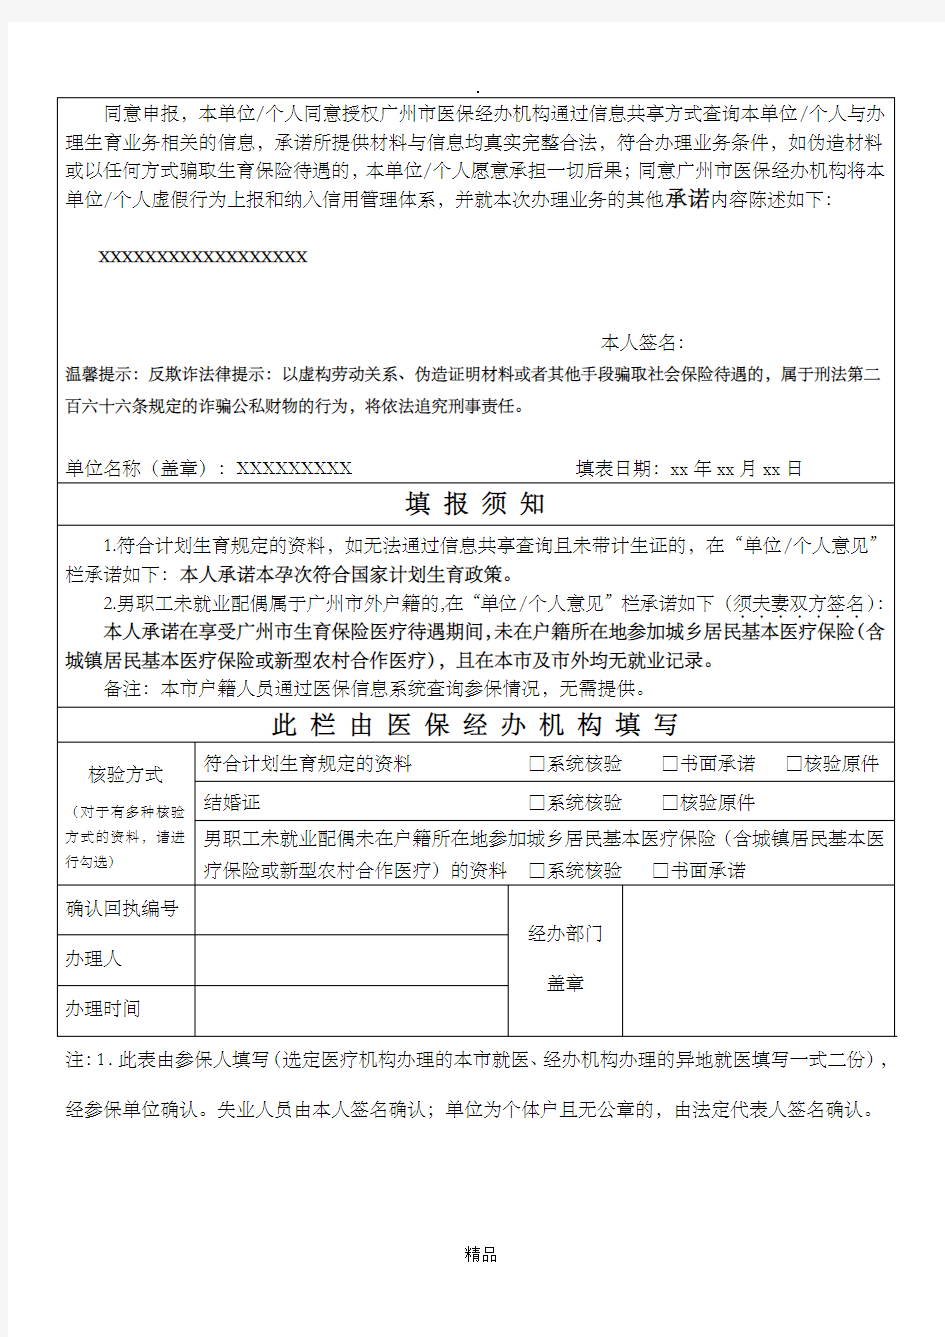 广州市职工生育保险就医确认申请表(最新版)